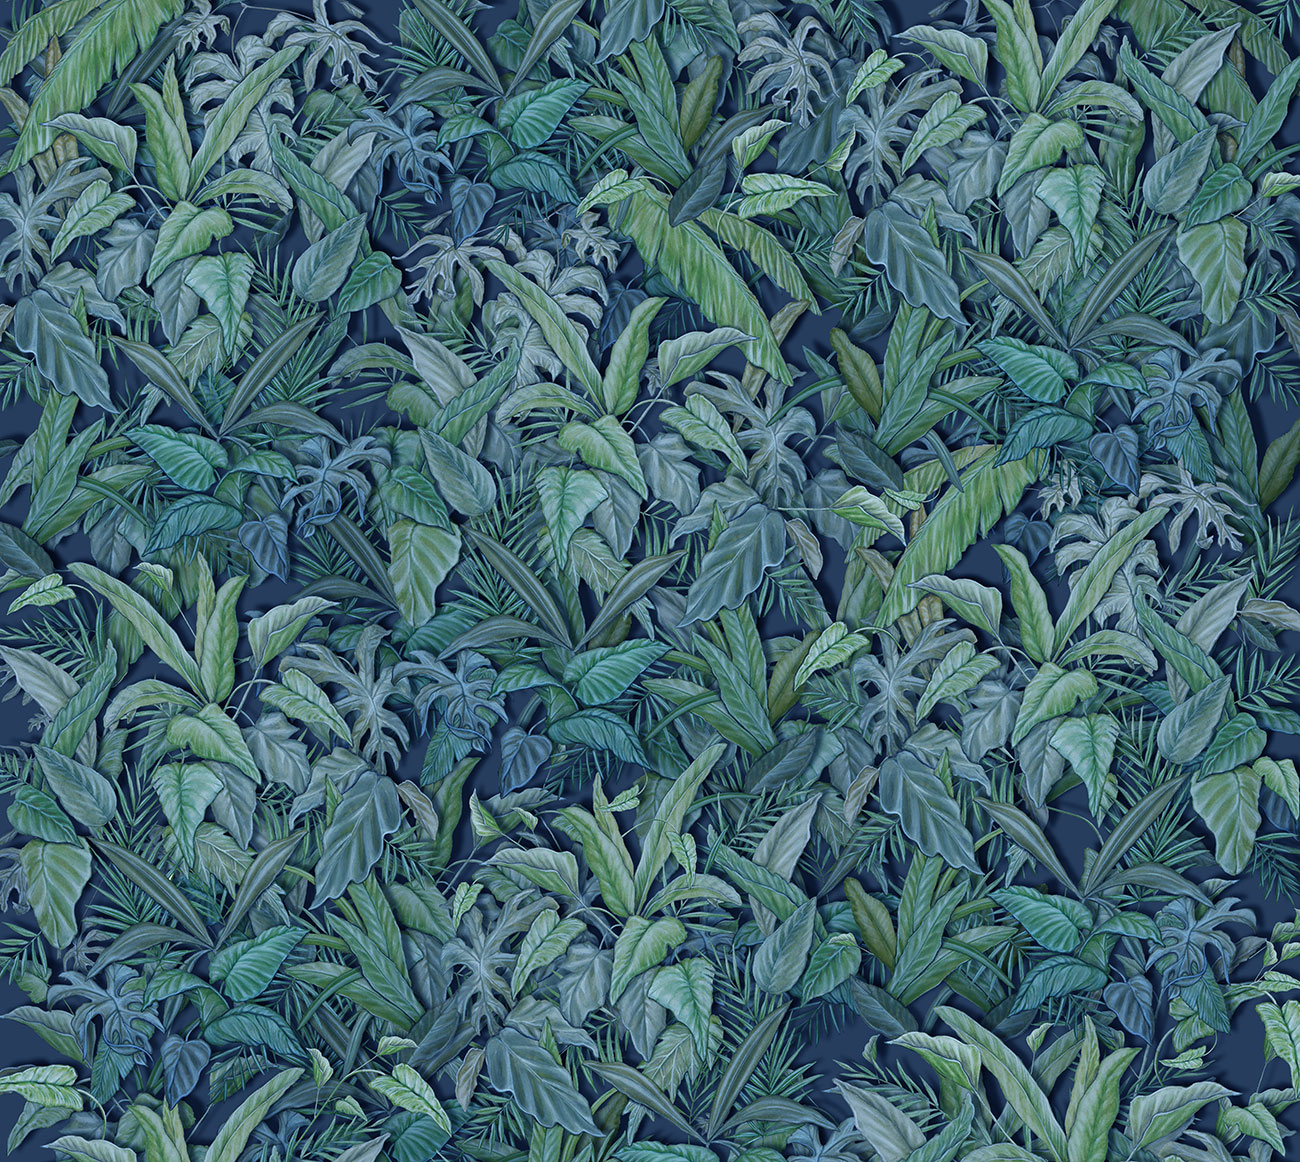 Carta da parati tropicale, effetto 3d con texture di foglie esotiche con vari toni di verde